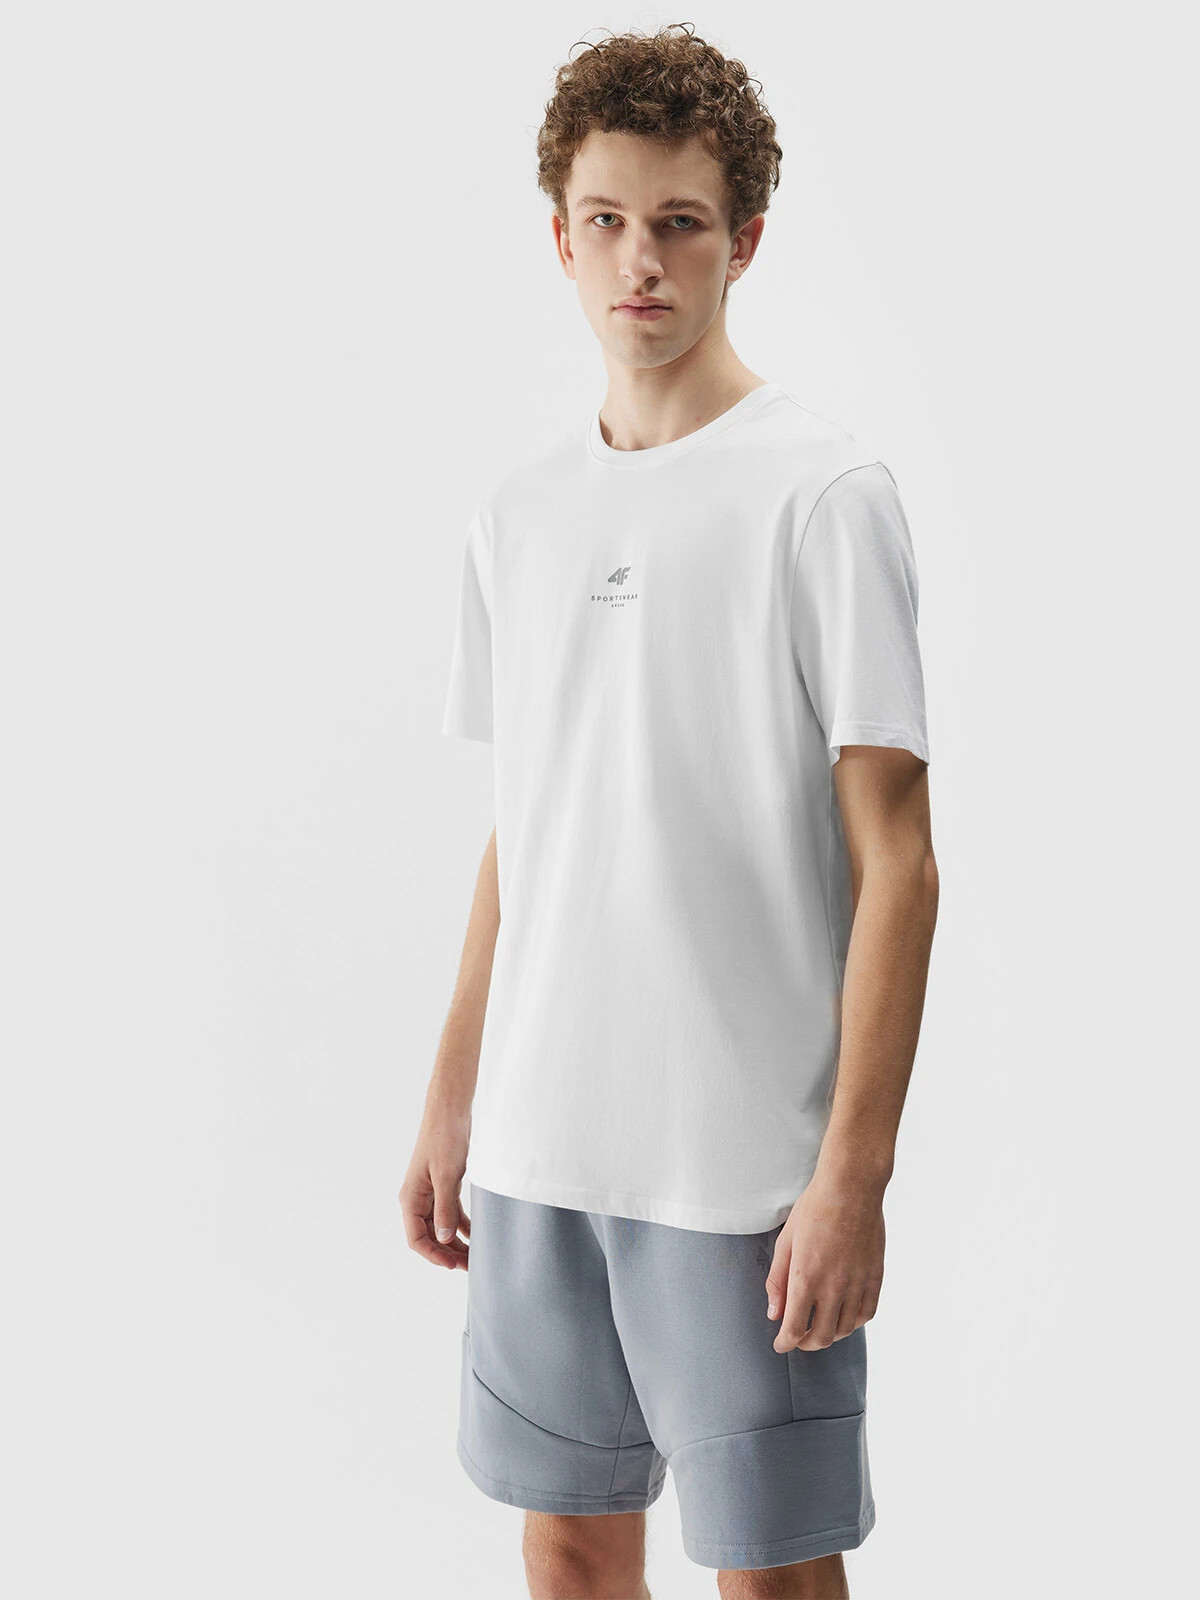 Men's Plain T-Shirt Regular 4F - White